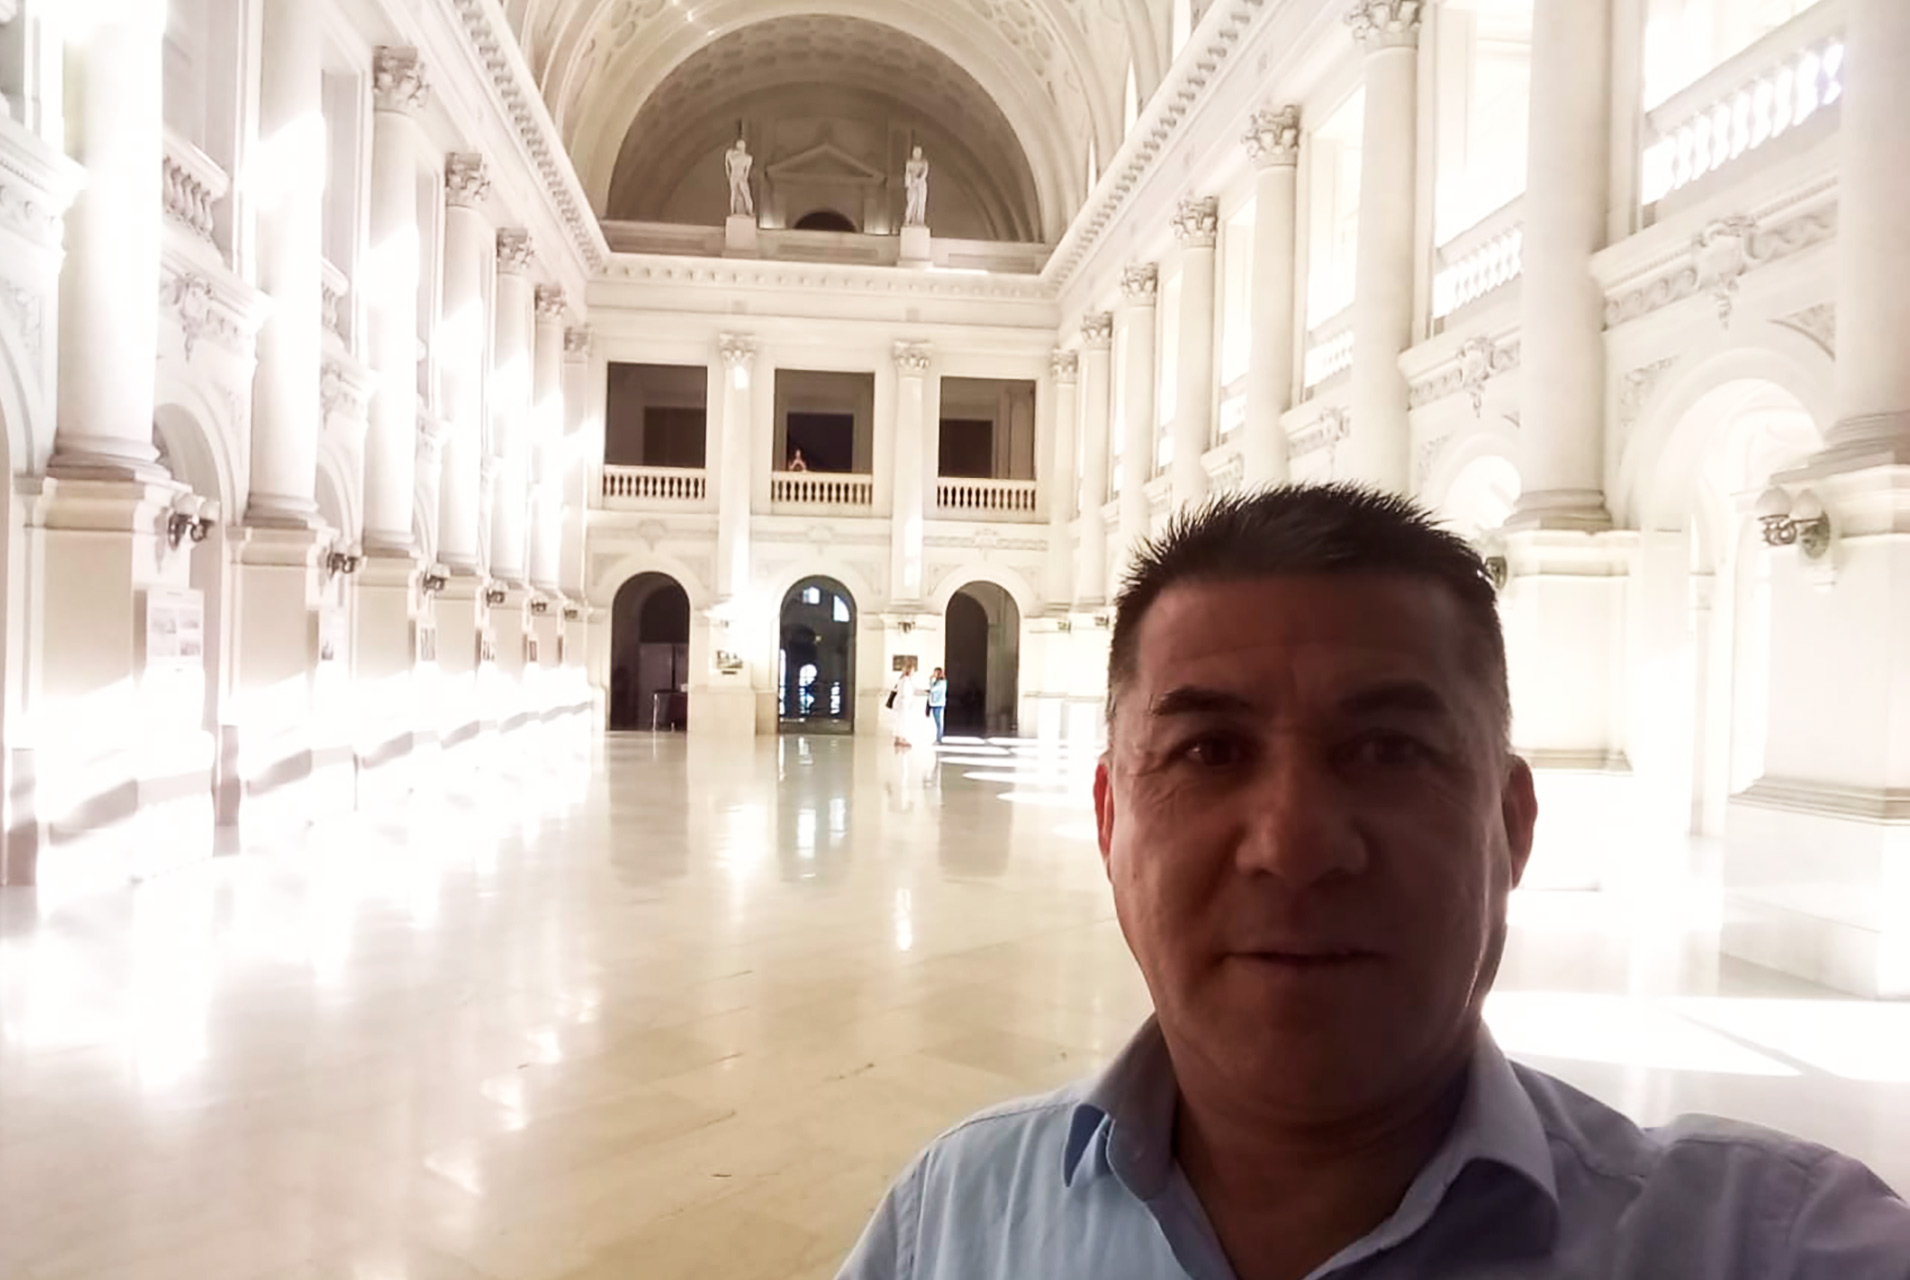 Notificaciones de Aviso de Deuda en Córdoba La Rapidez y Confianza que Ofrece MENSAWEB de Sergio Eduardo Díaz